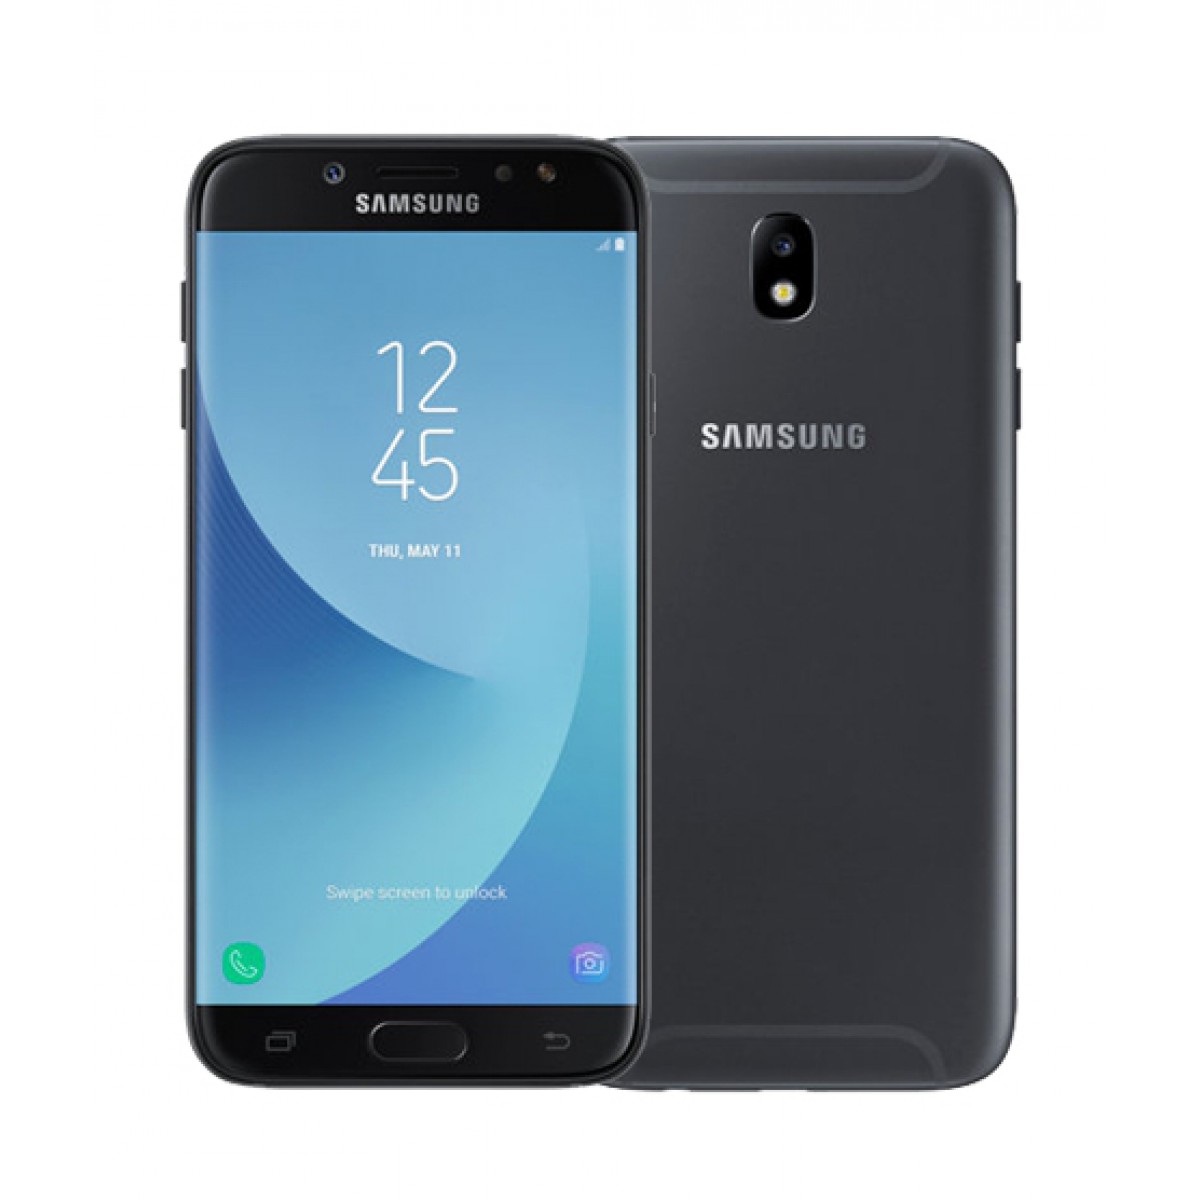 Samsung Galaxy J7 Pro - Todas las especificaciones ...
